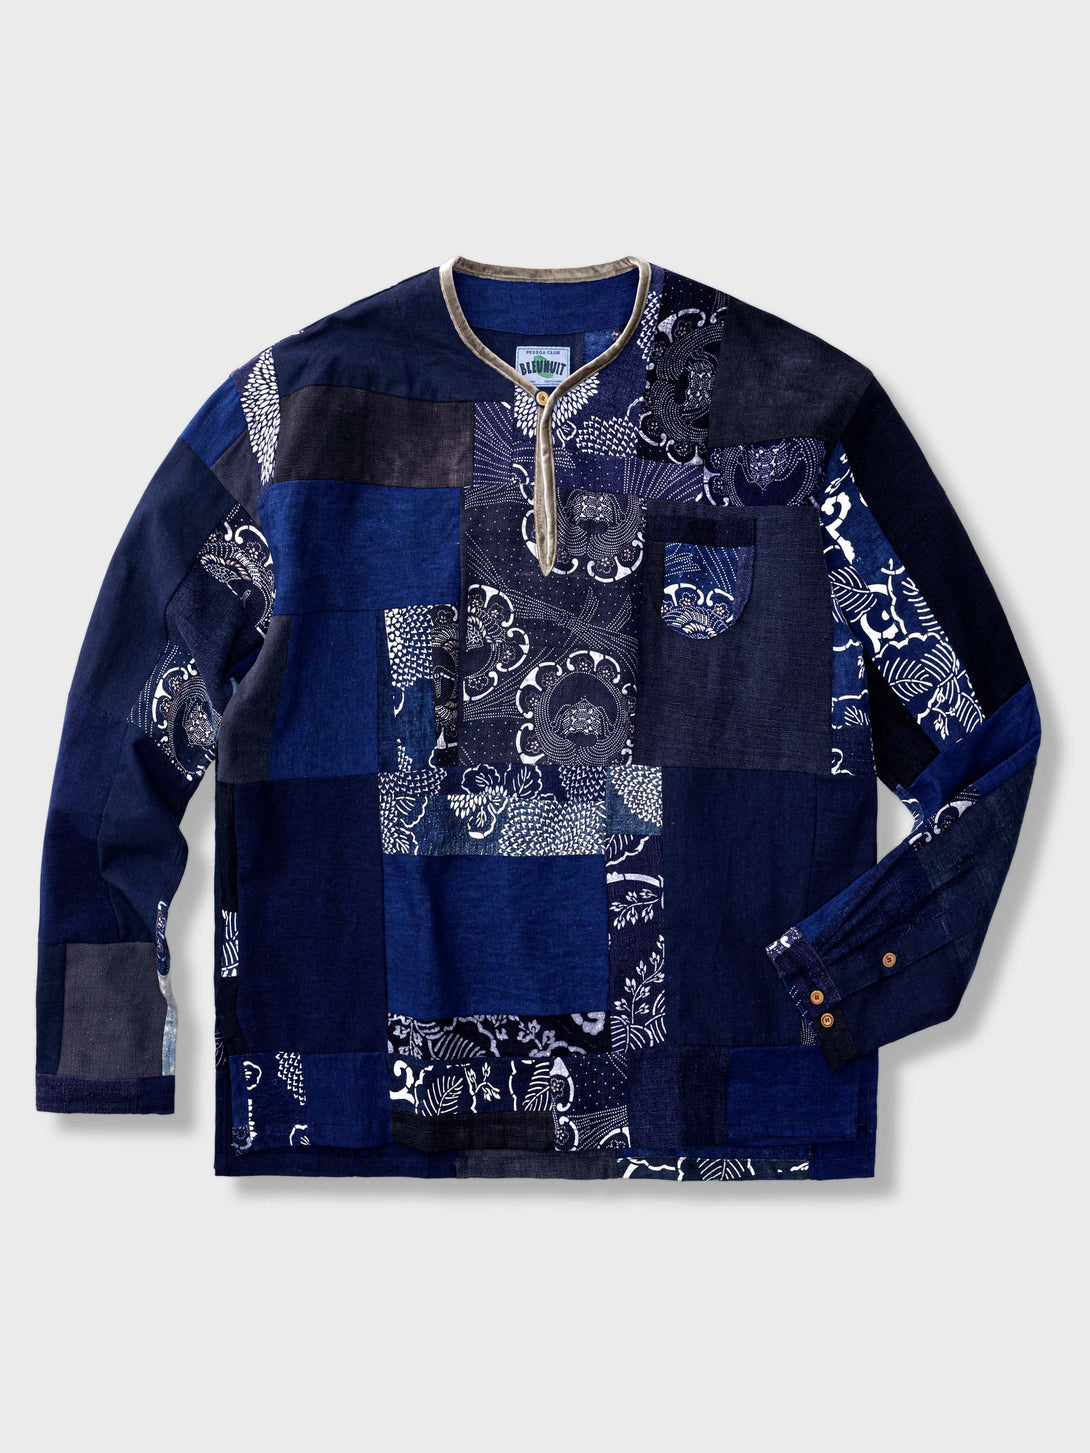 アンティークな手作り古布の藍染めロングスリーブTシャツ、個性的で複製できないデザイン